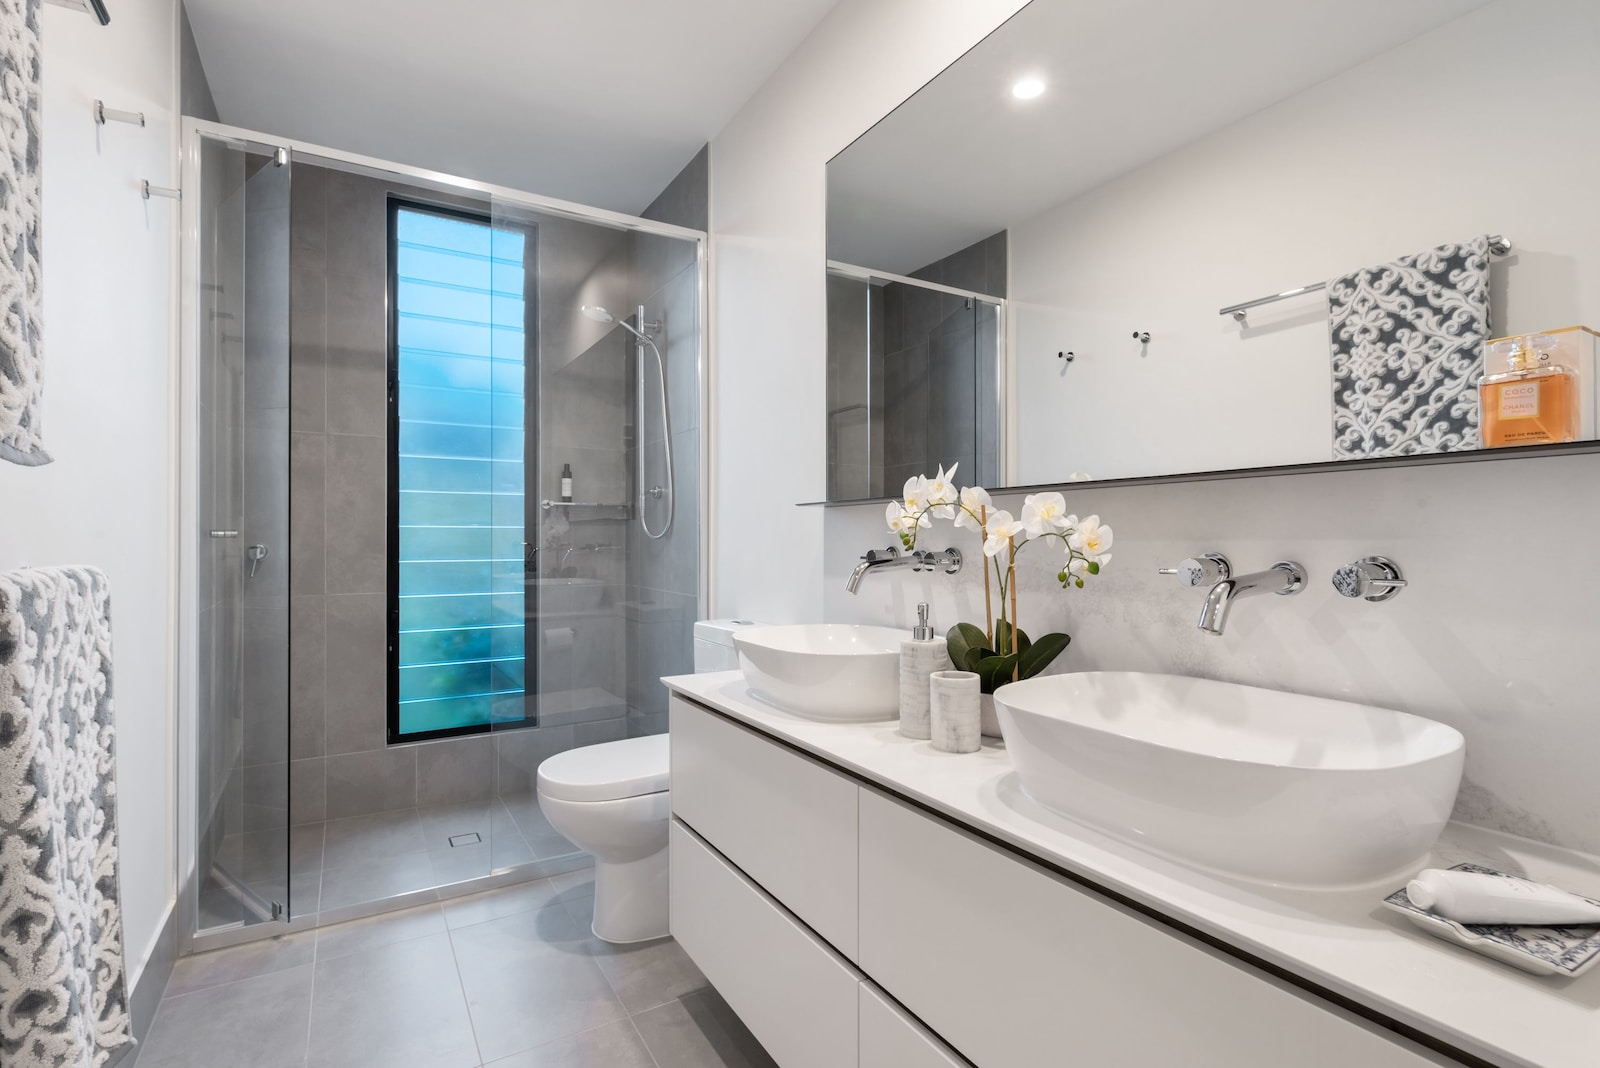 aspectos técnicos y decorativos que debes considerar para hacer de tu baño un espacio funcional y atractivo